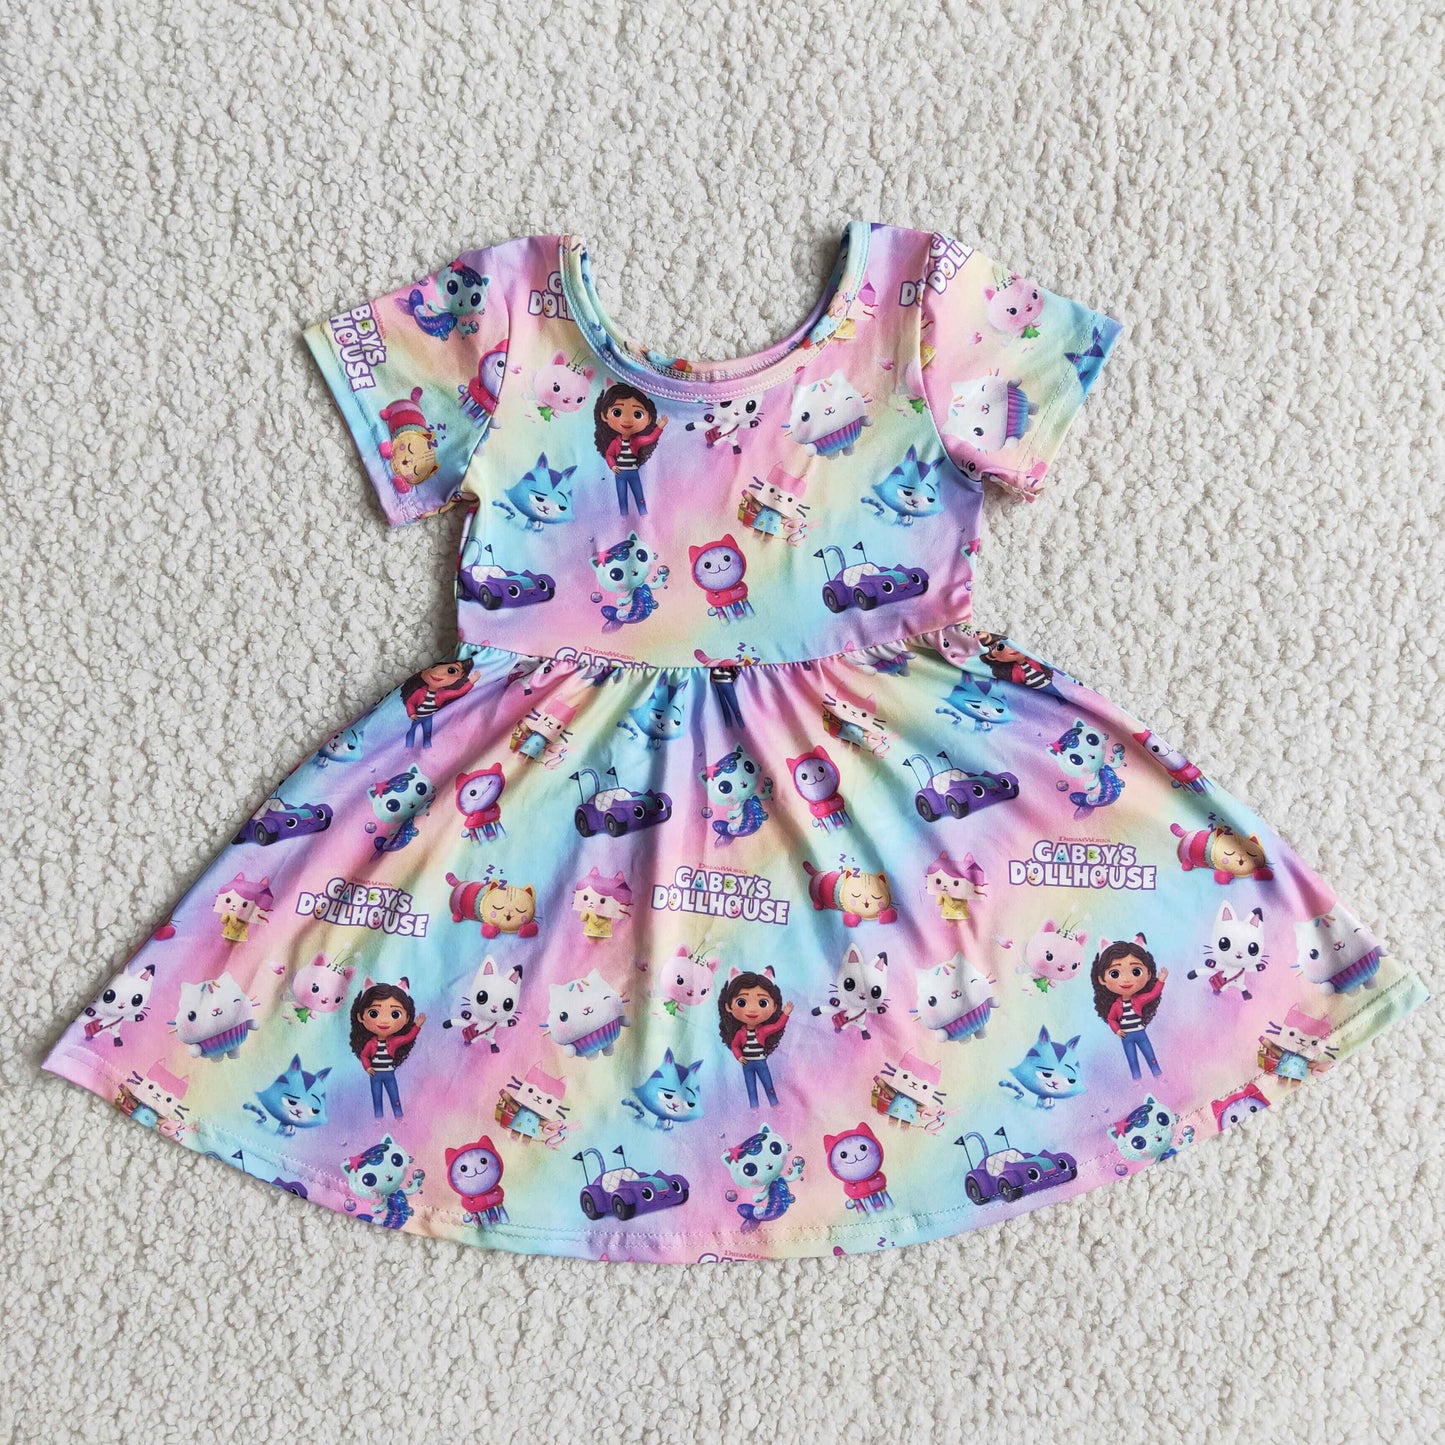 rainbow gabby doll house dress